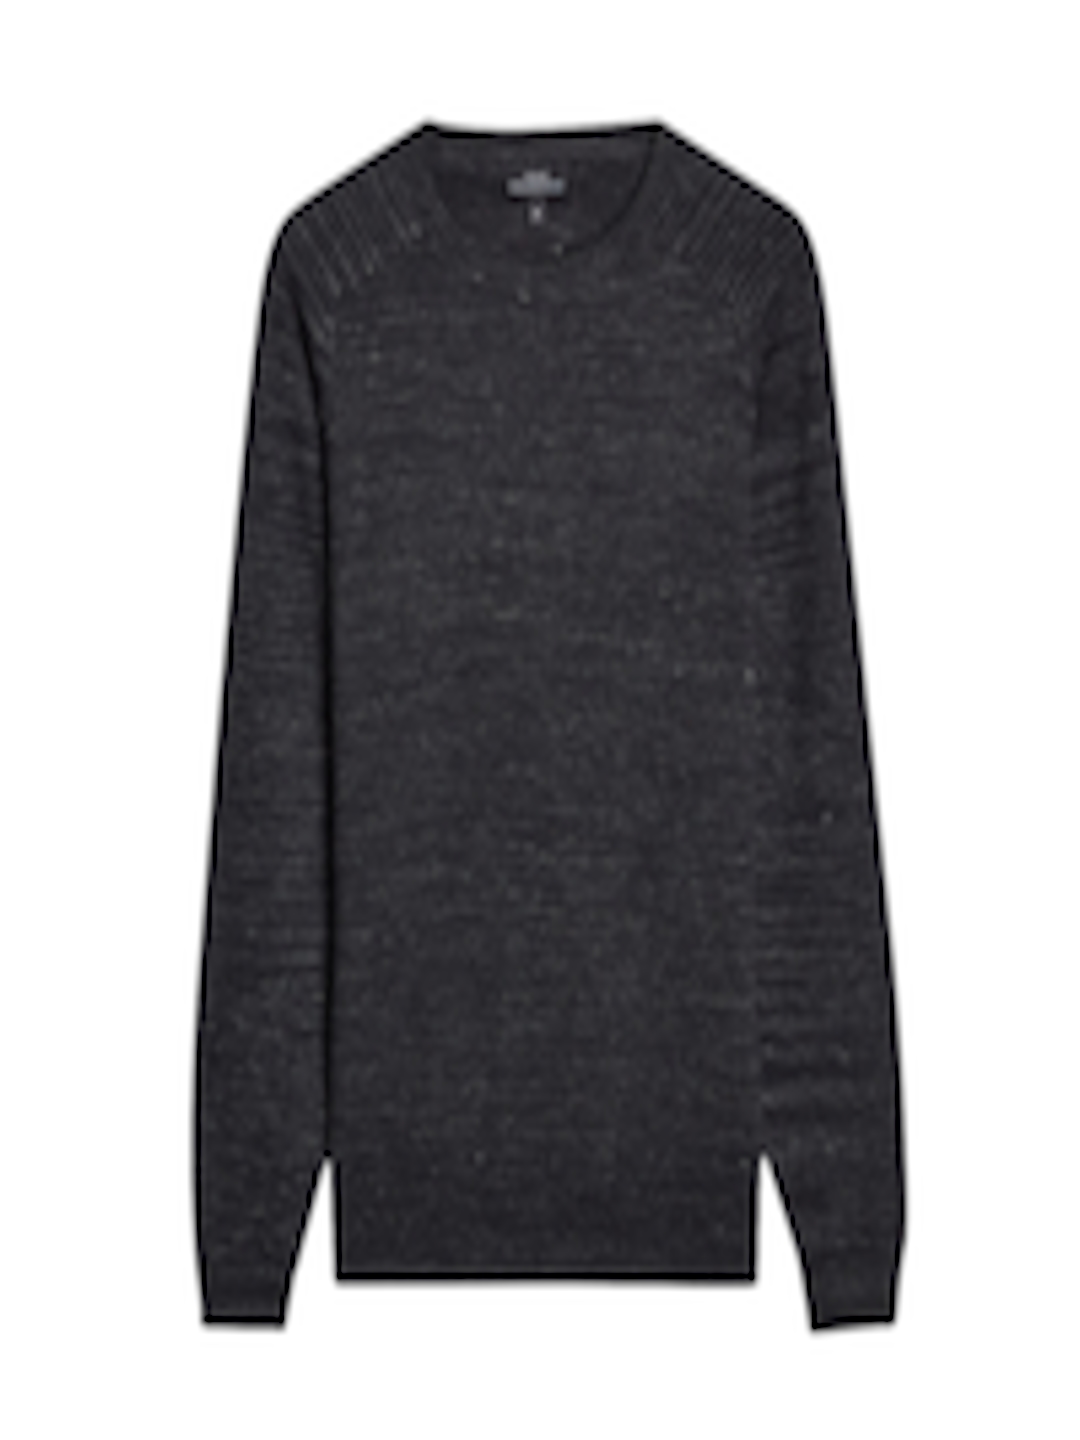 Buy NEXT Men Black Solid Sweatshirt - Sweatshirts for Men 2198960 | Myntra